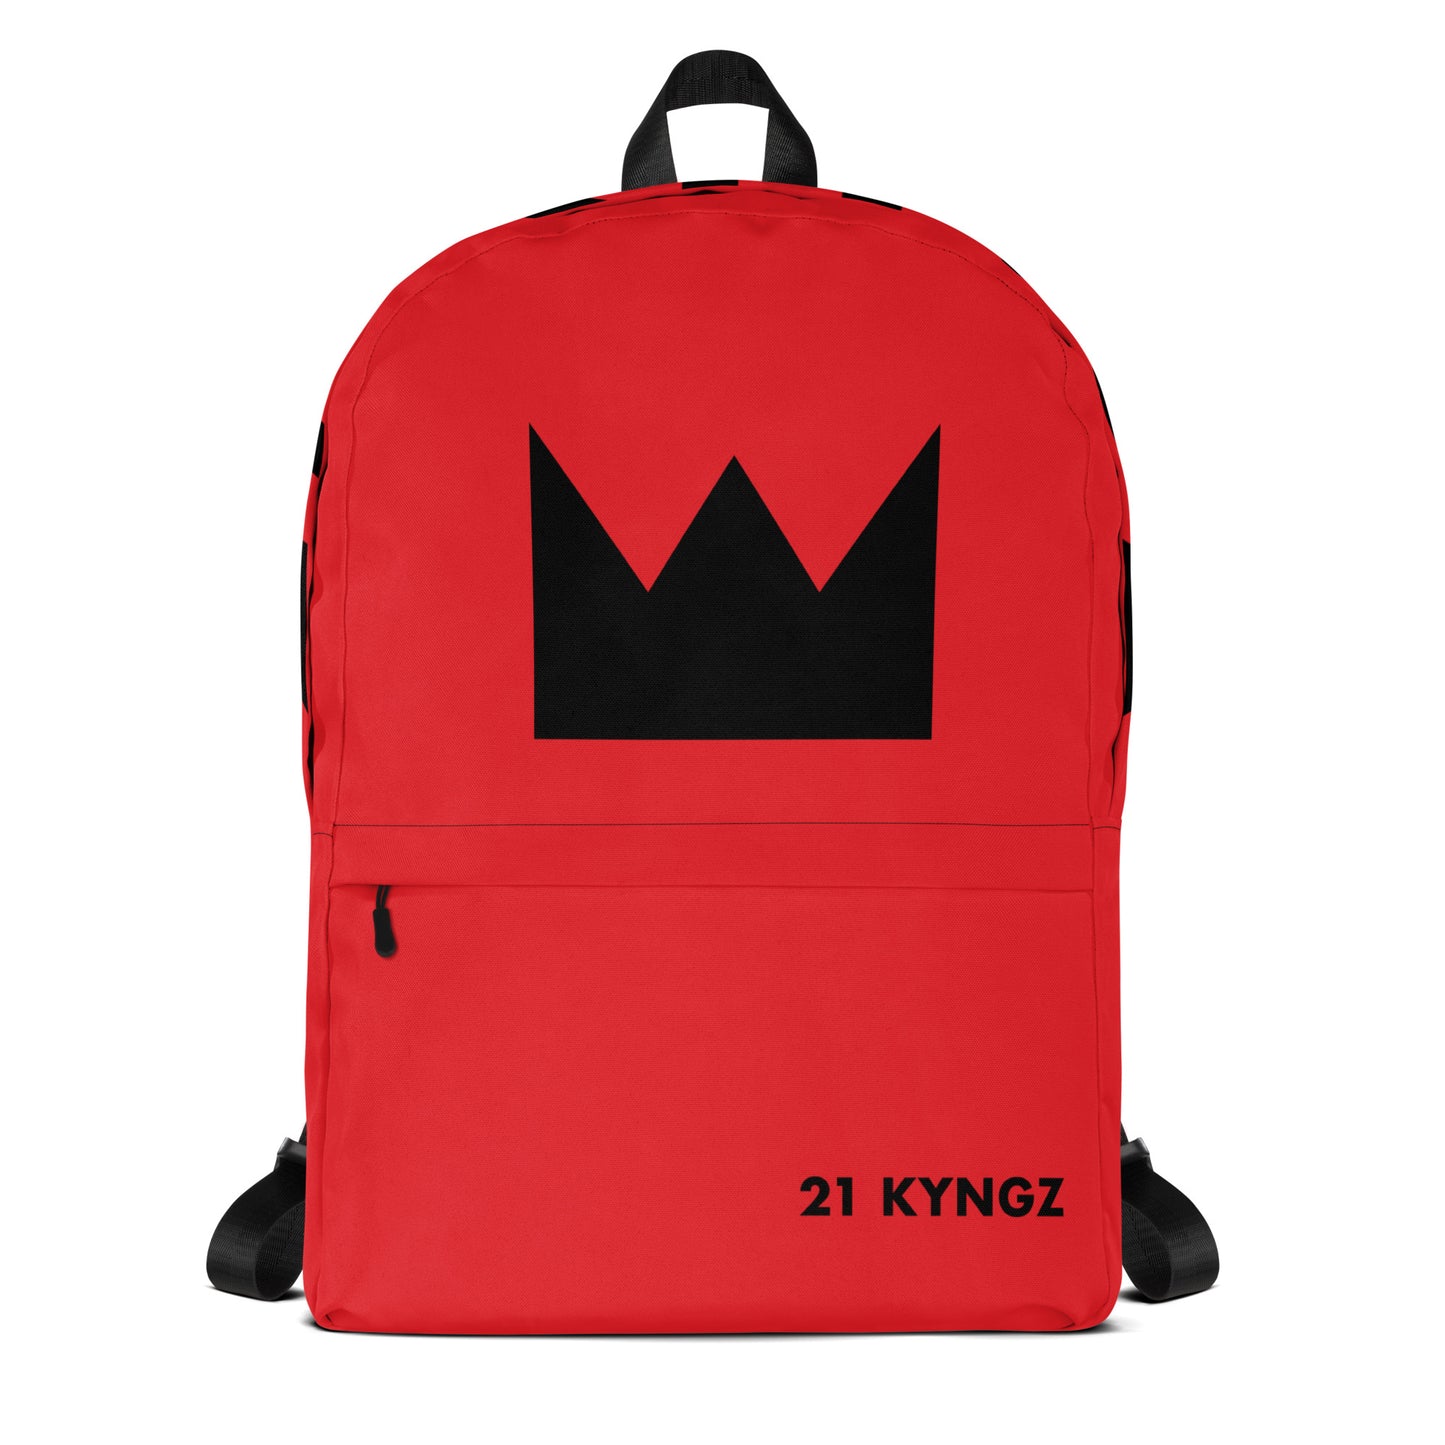 21 KYNGZ White Backpack